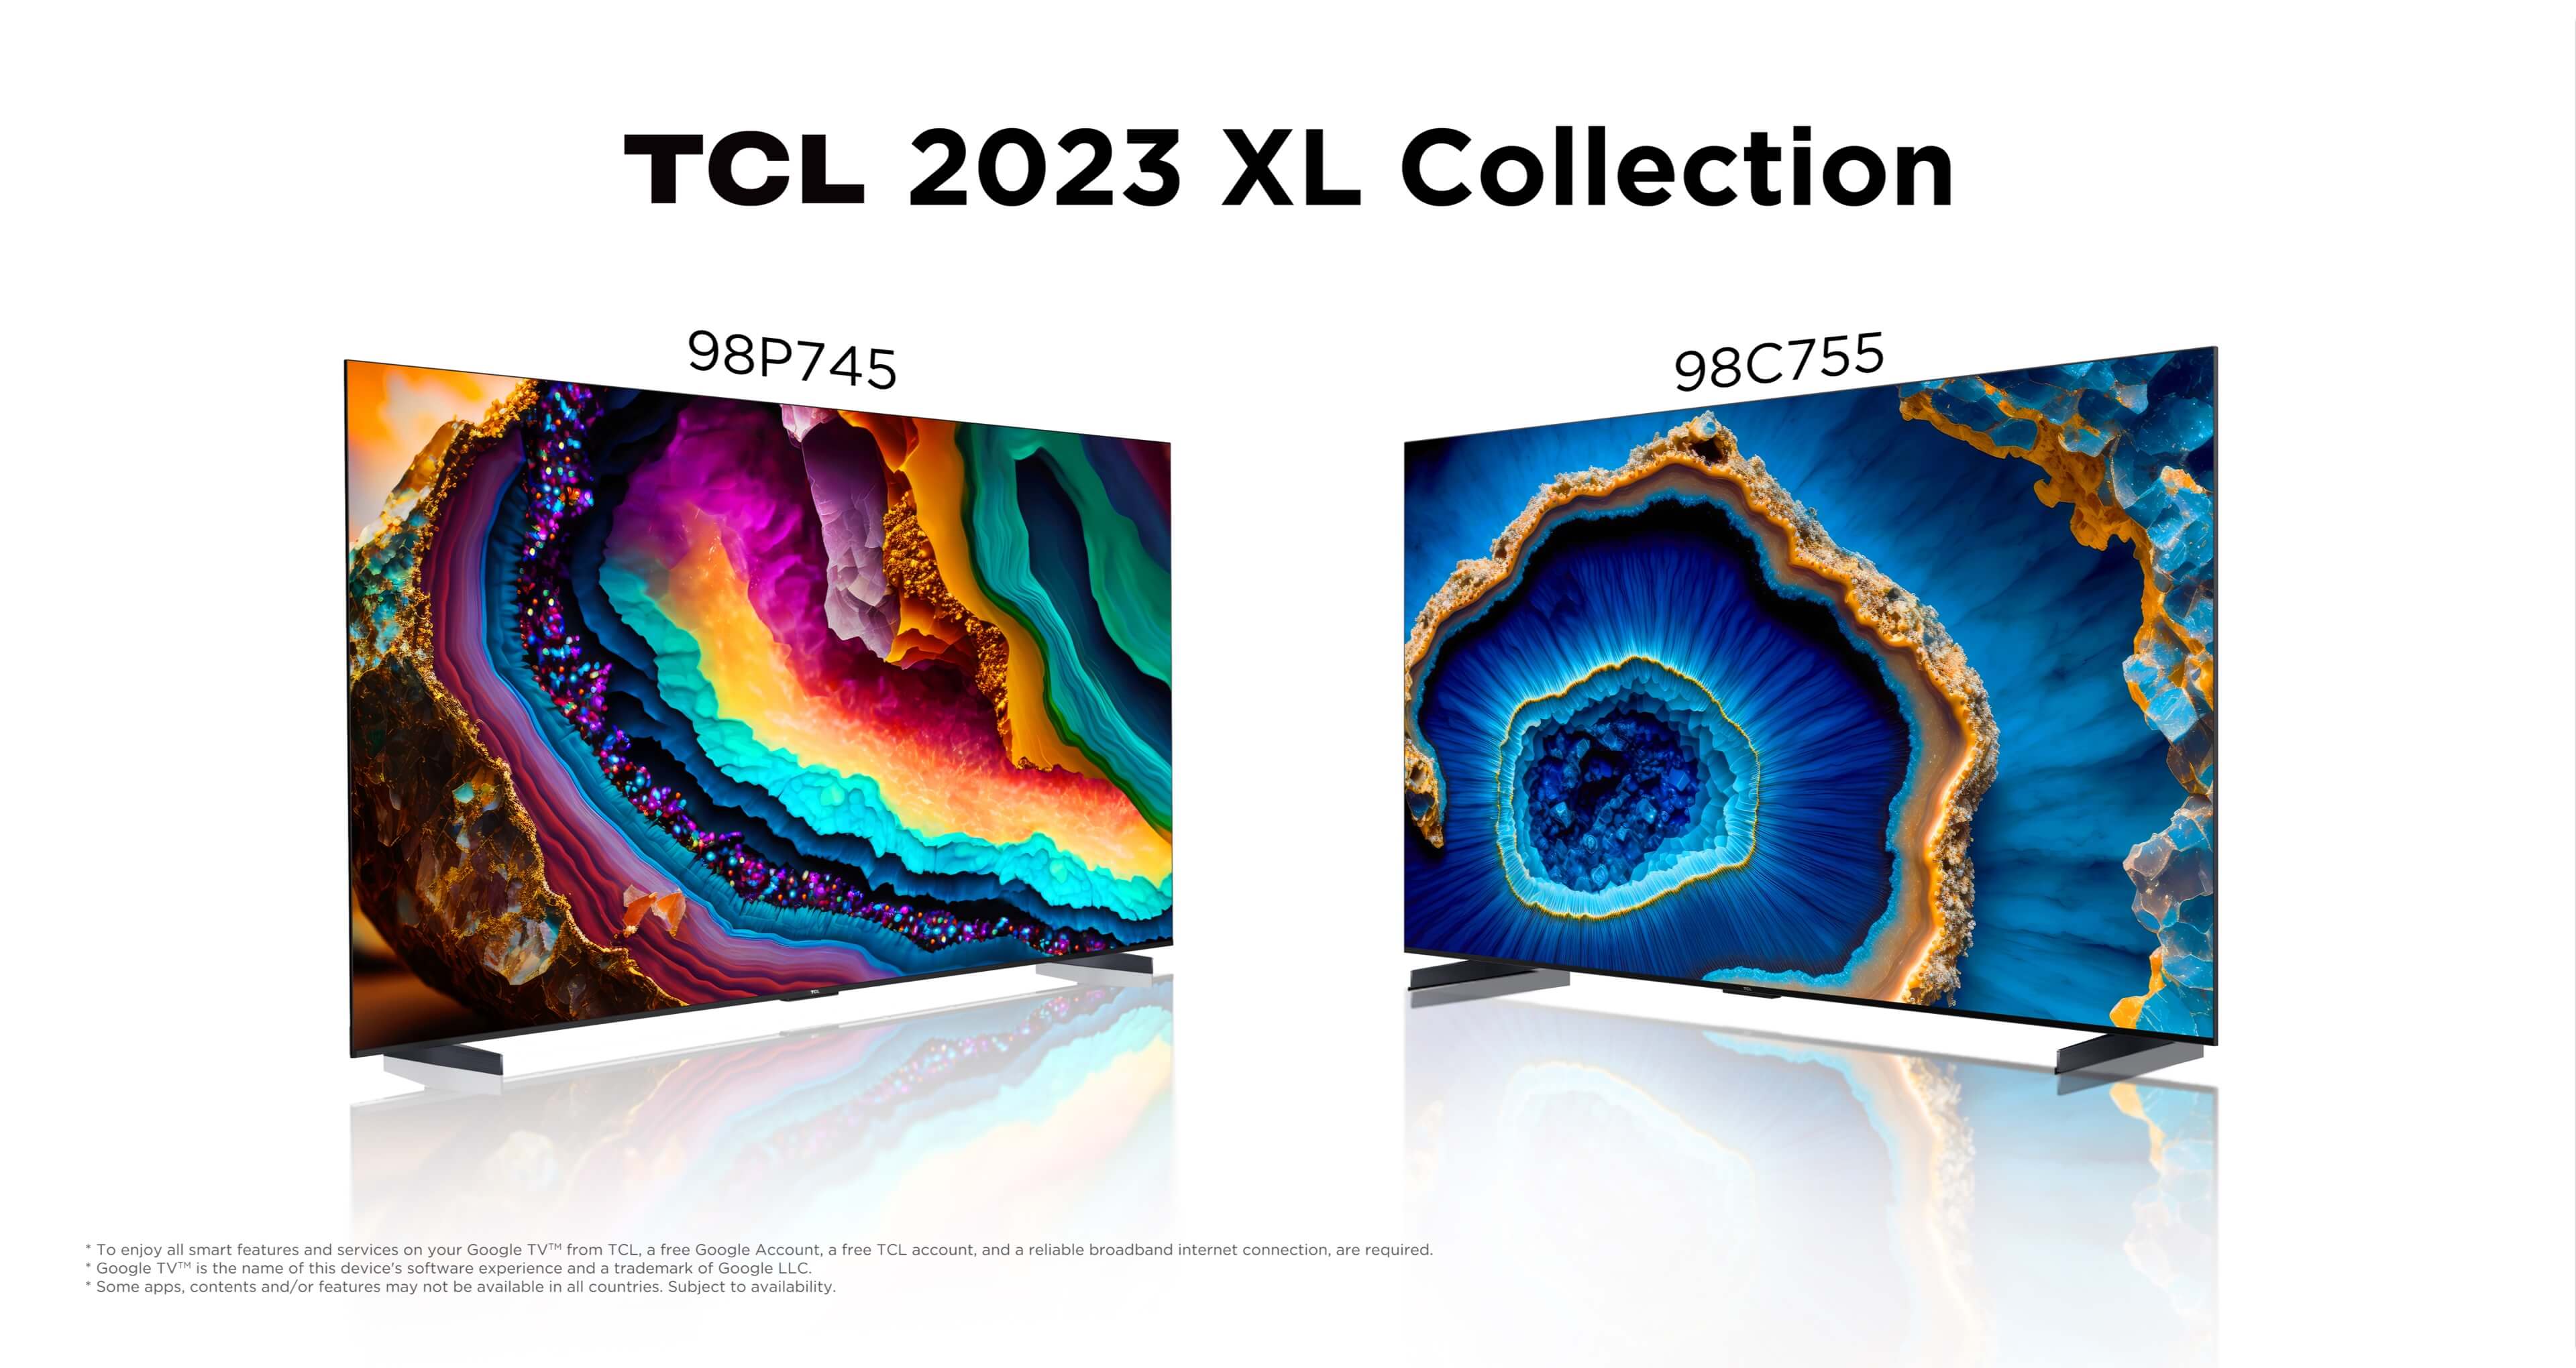 南宫ng·28 2023 XL Collection